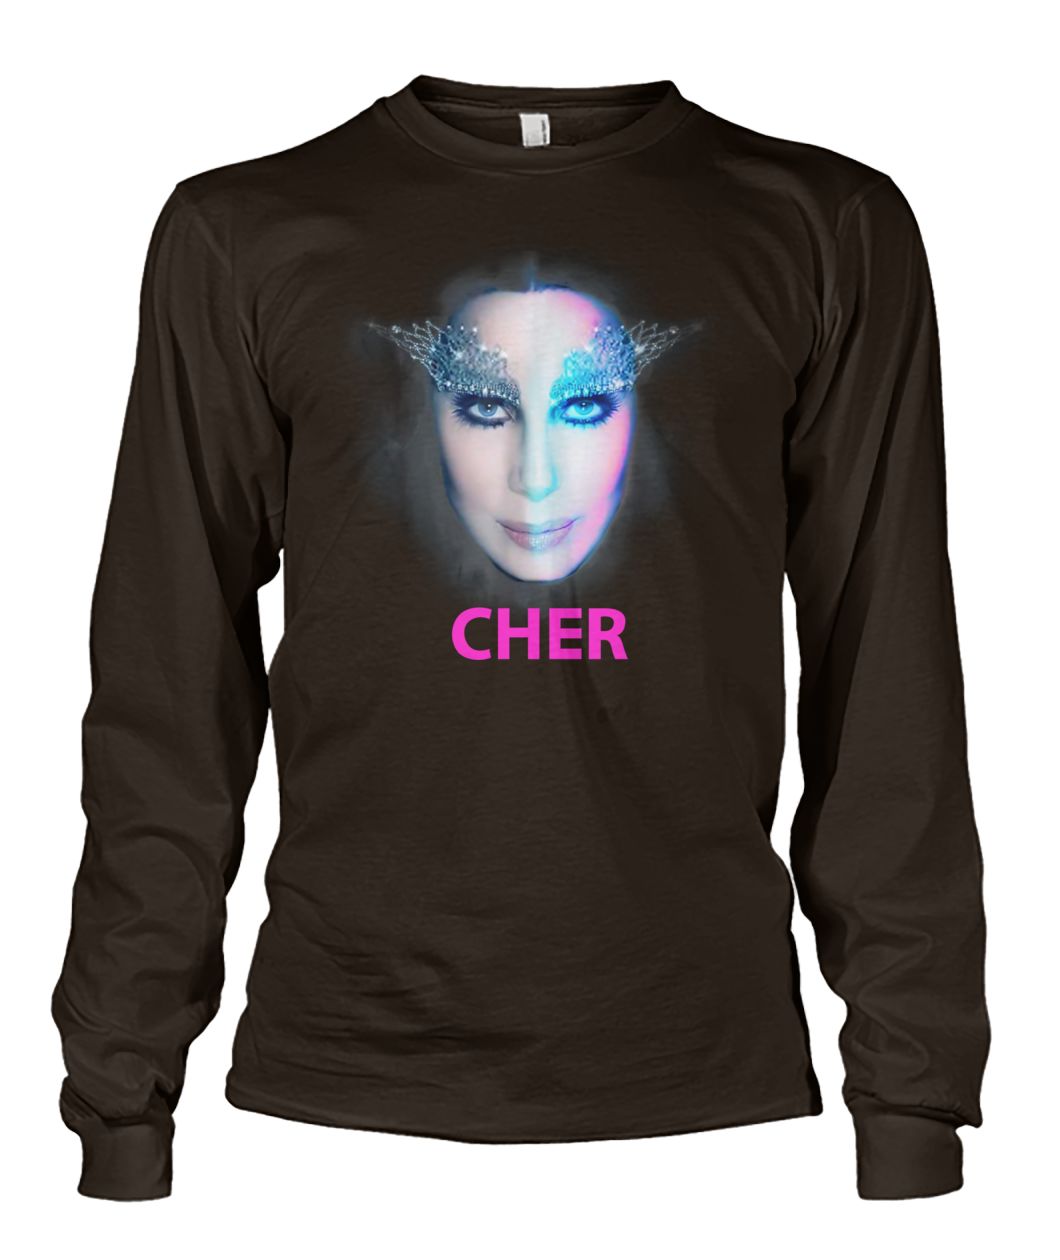 Cher dancing queen unisex long sleeve